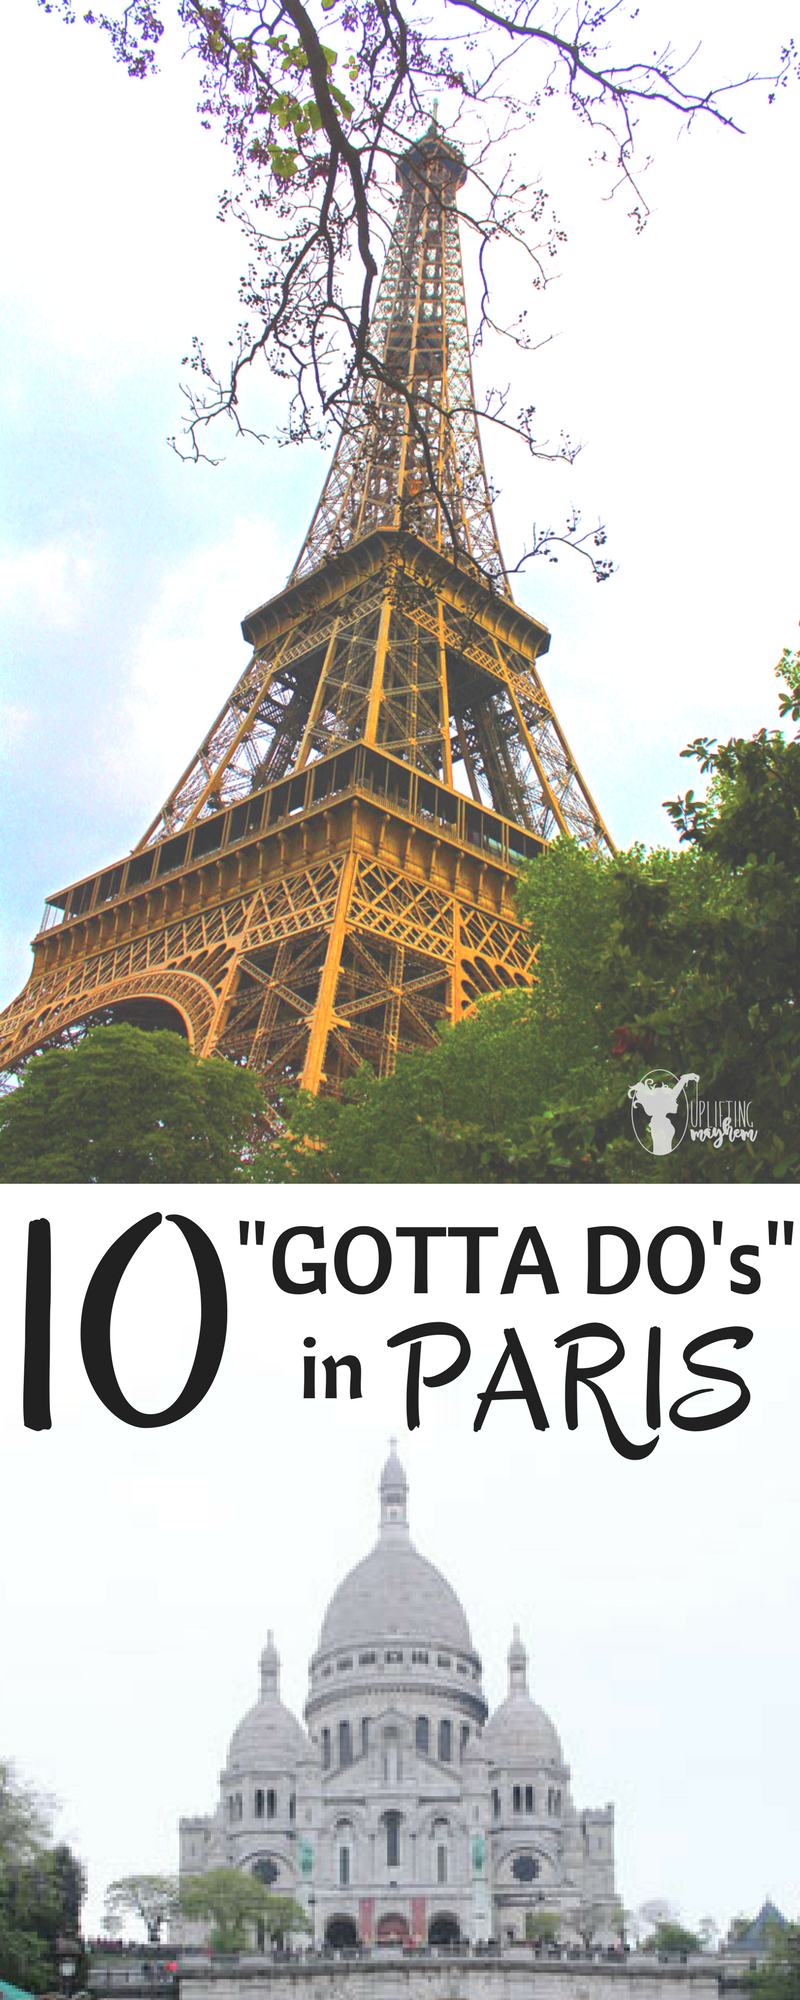 10 "Gotta Do's" in Paris